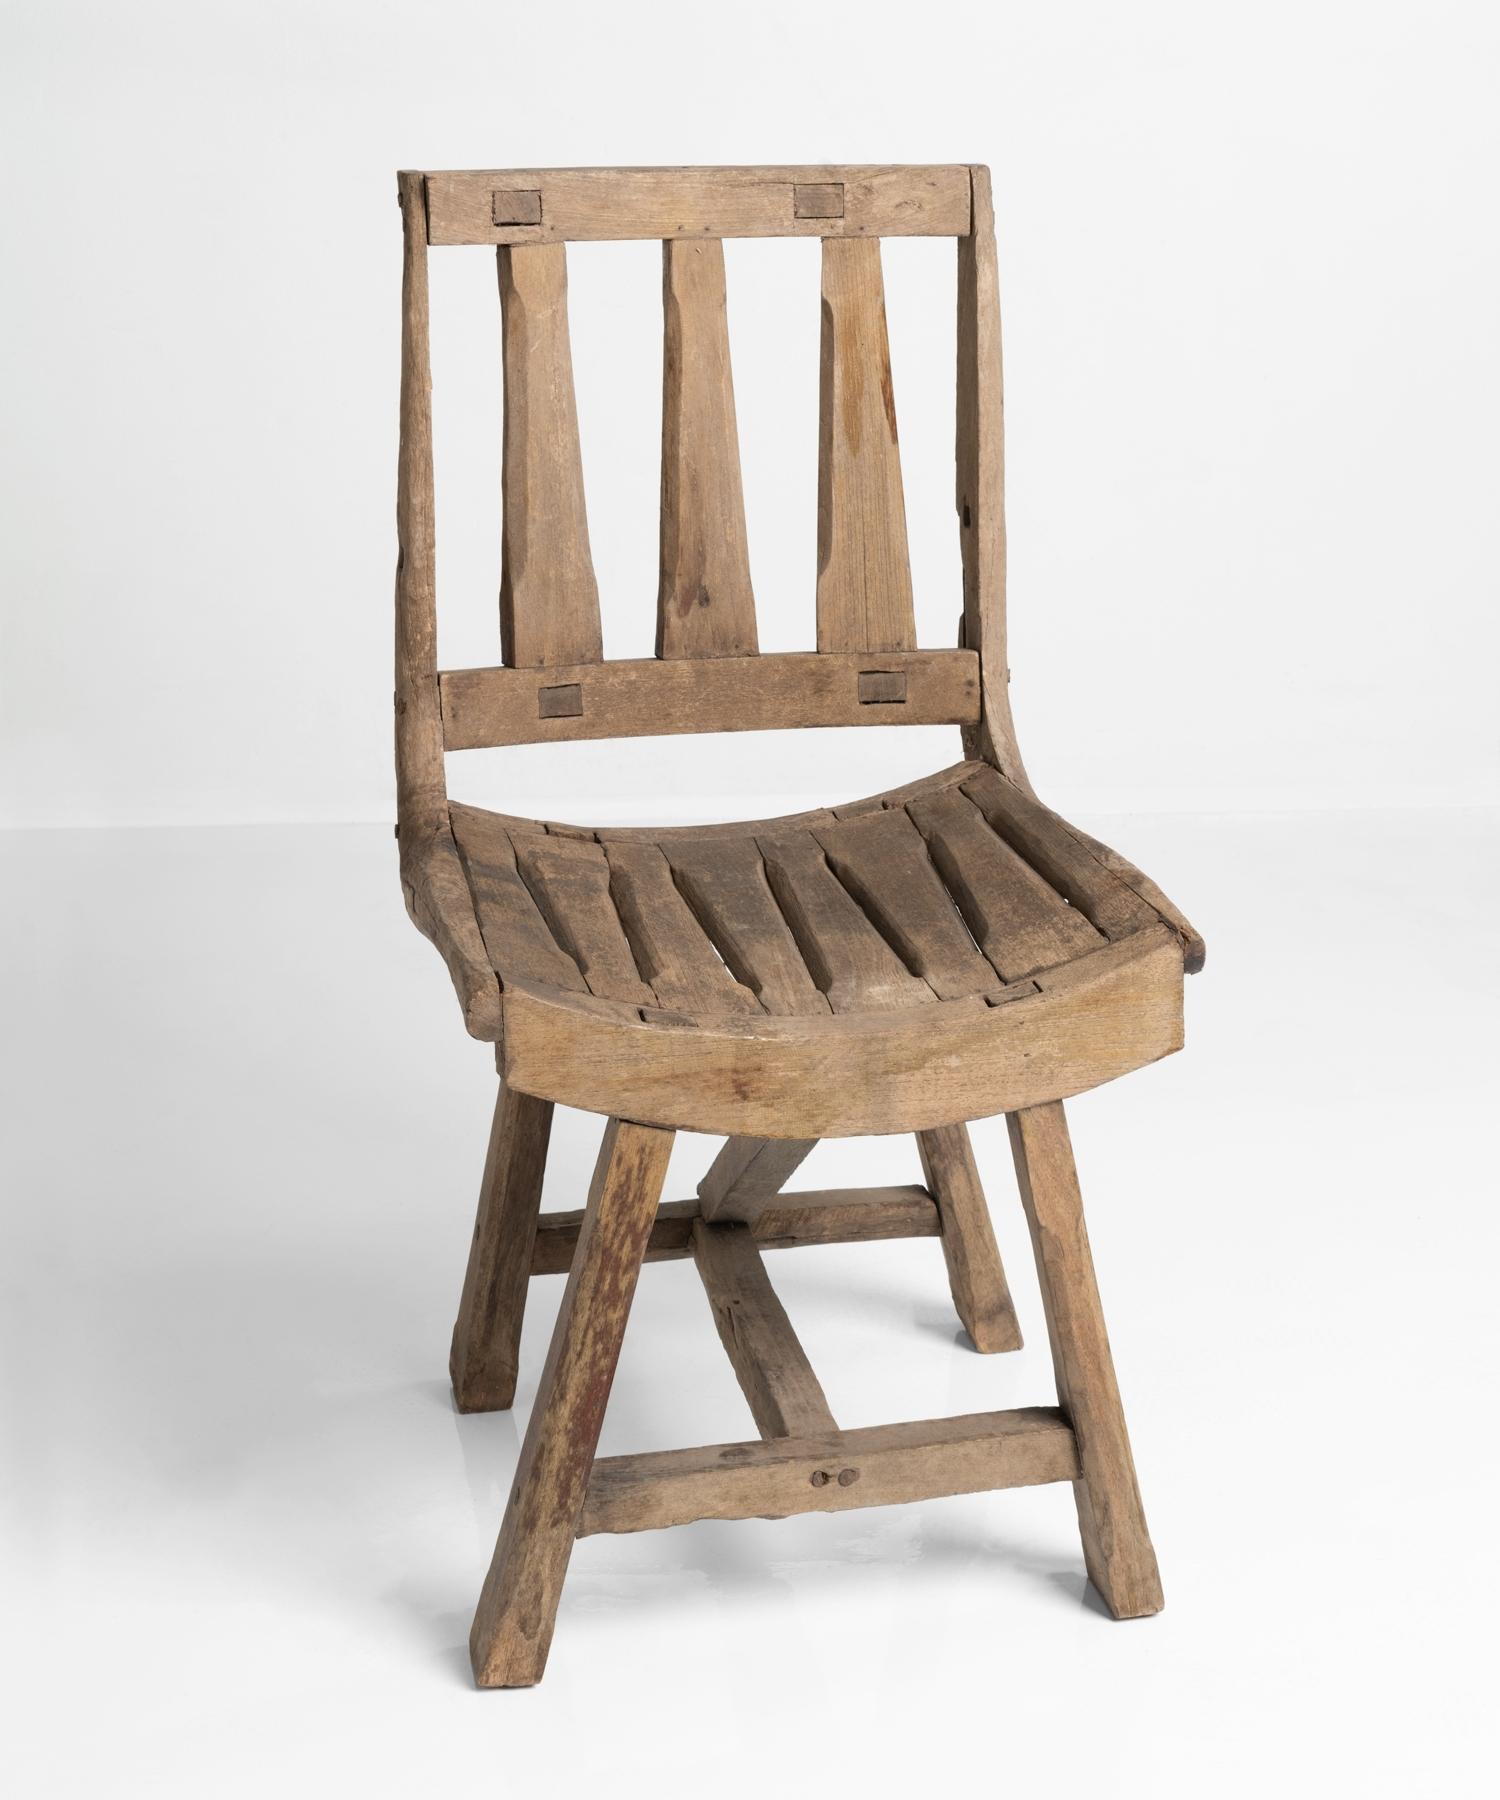 Primitive oak chair, France, 20th century.

Unique form, with handsome pale patina.